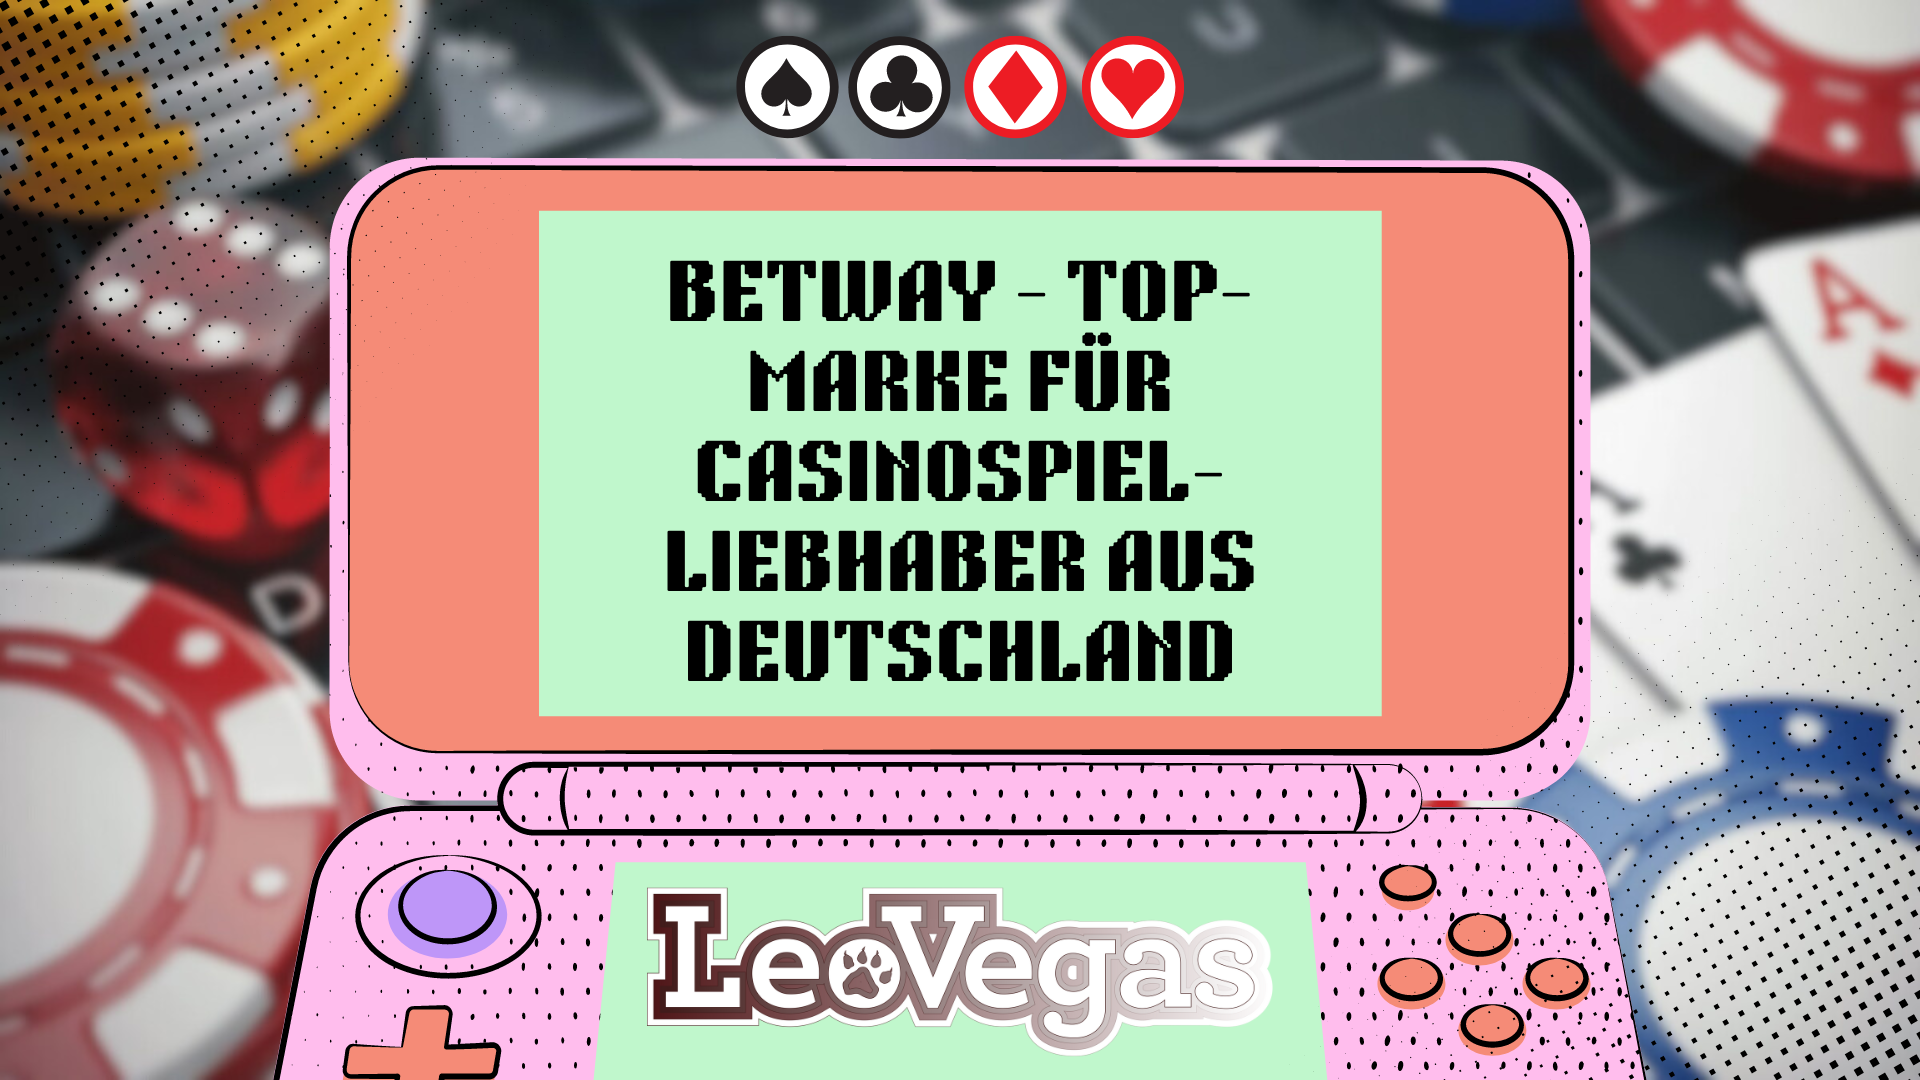 Betway — Top-Marke für Casinospiel-Liebhaber aus Deutschland 